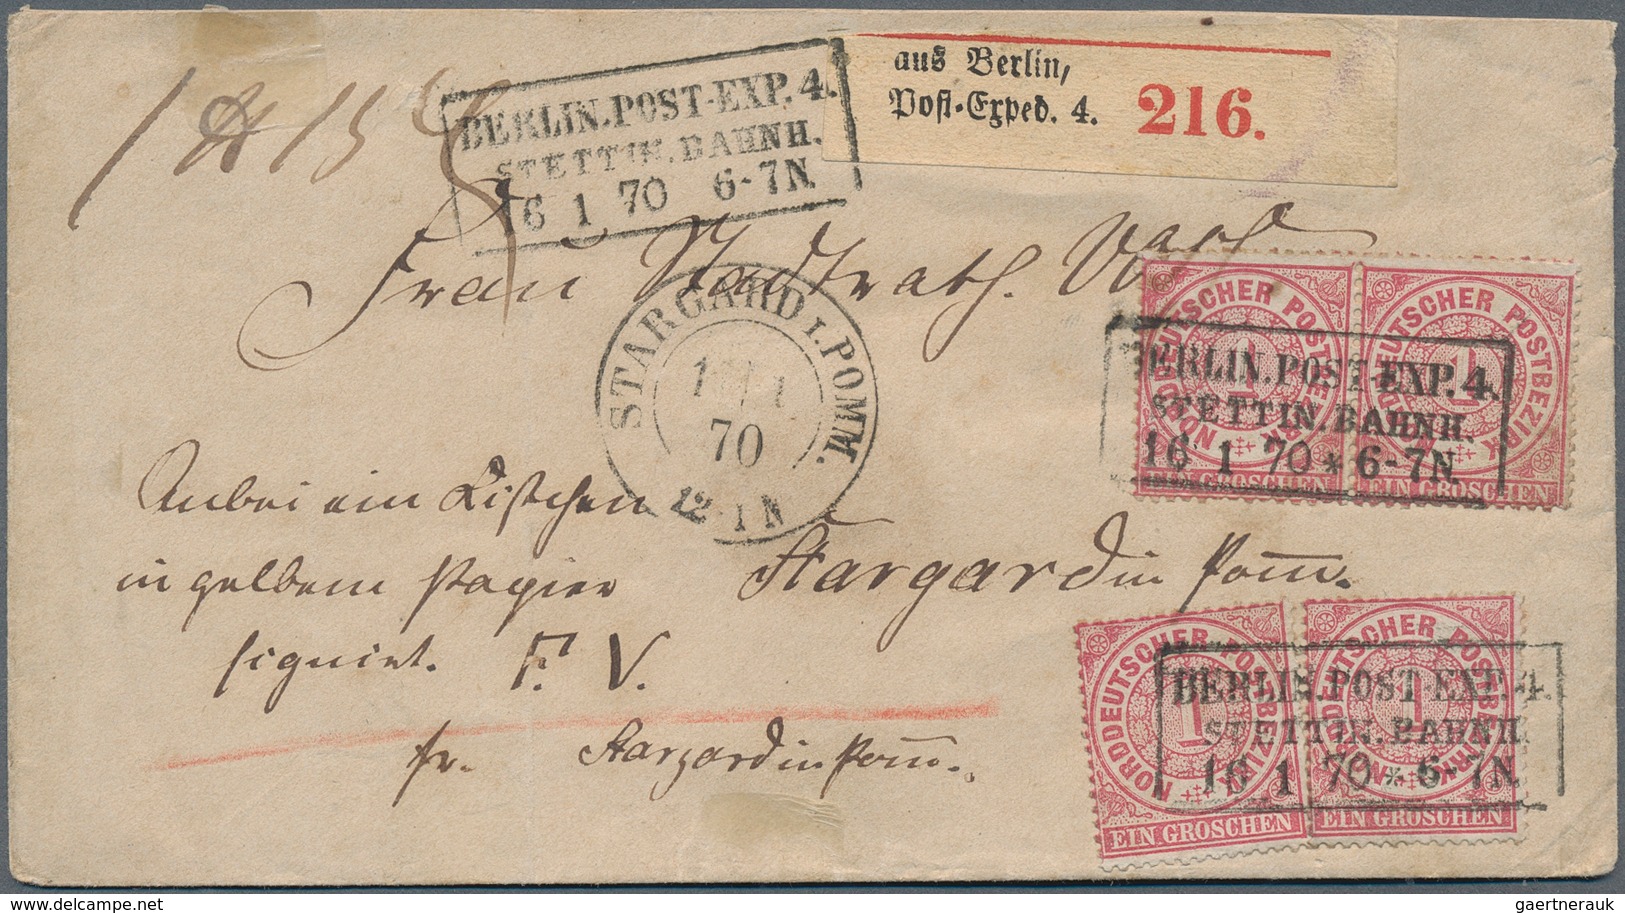 31150 Altdeutschland: 1850-1870 ca.: Etwa 70 Briefe und Ganzsachen sowie einige Briefstücke aus den Altdeu